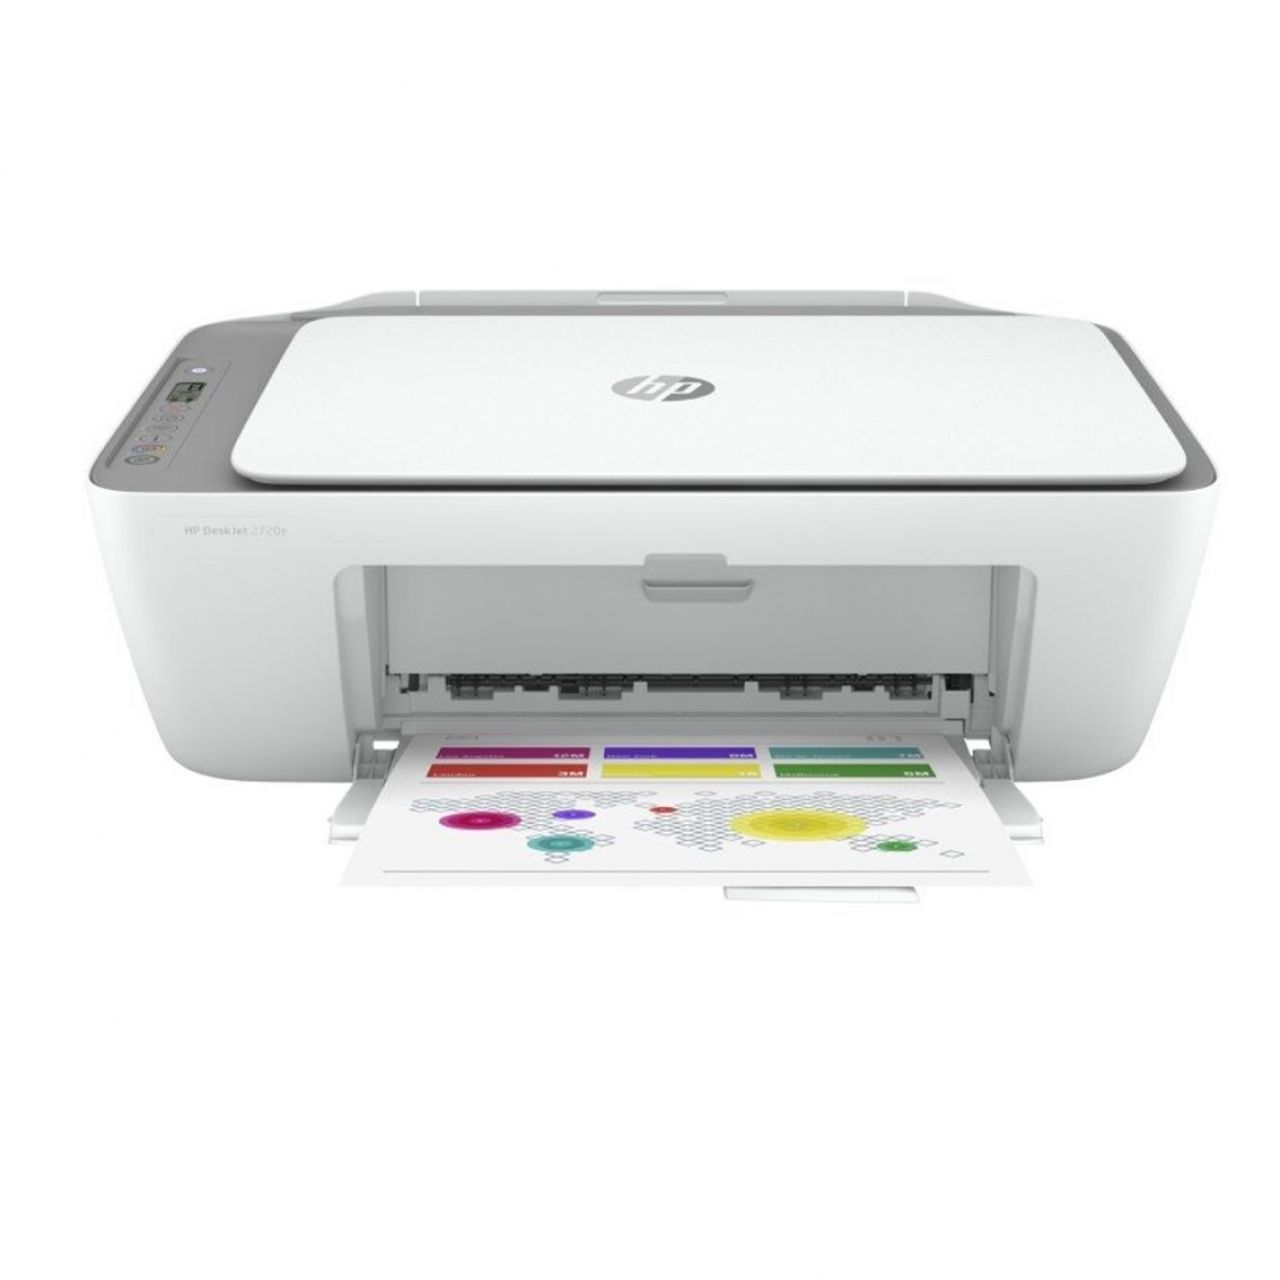 Destacada Impresora multifunción HP Color Deskjet 2720E A4 - 7.5ppm